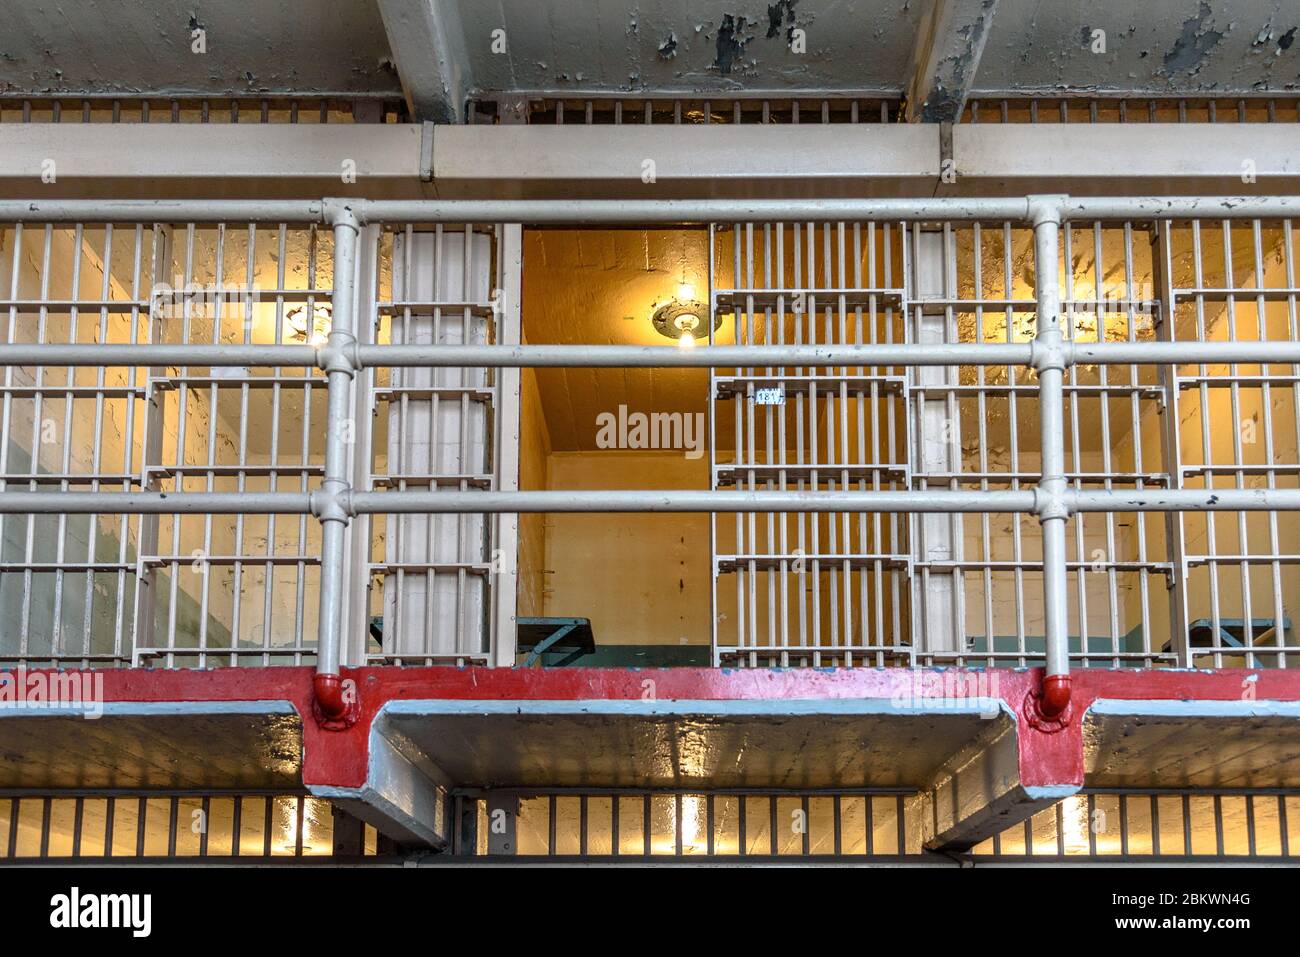 Al Capone's former prison cell at Alcatraz Federal Penitentiary Stock Photo